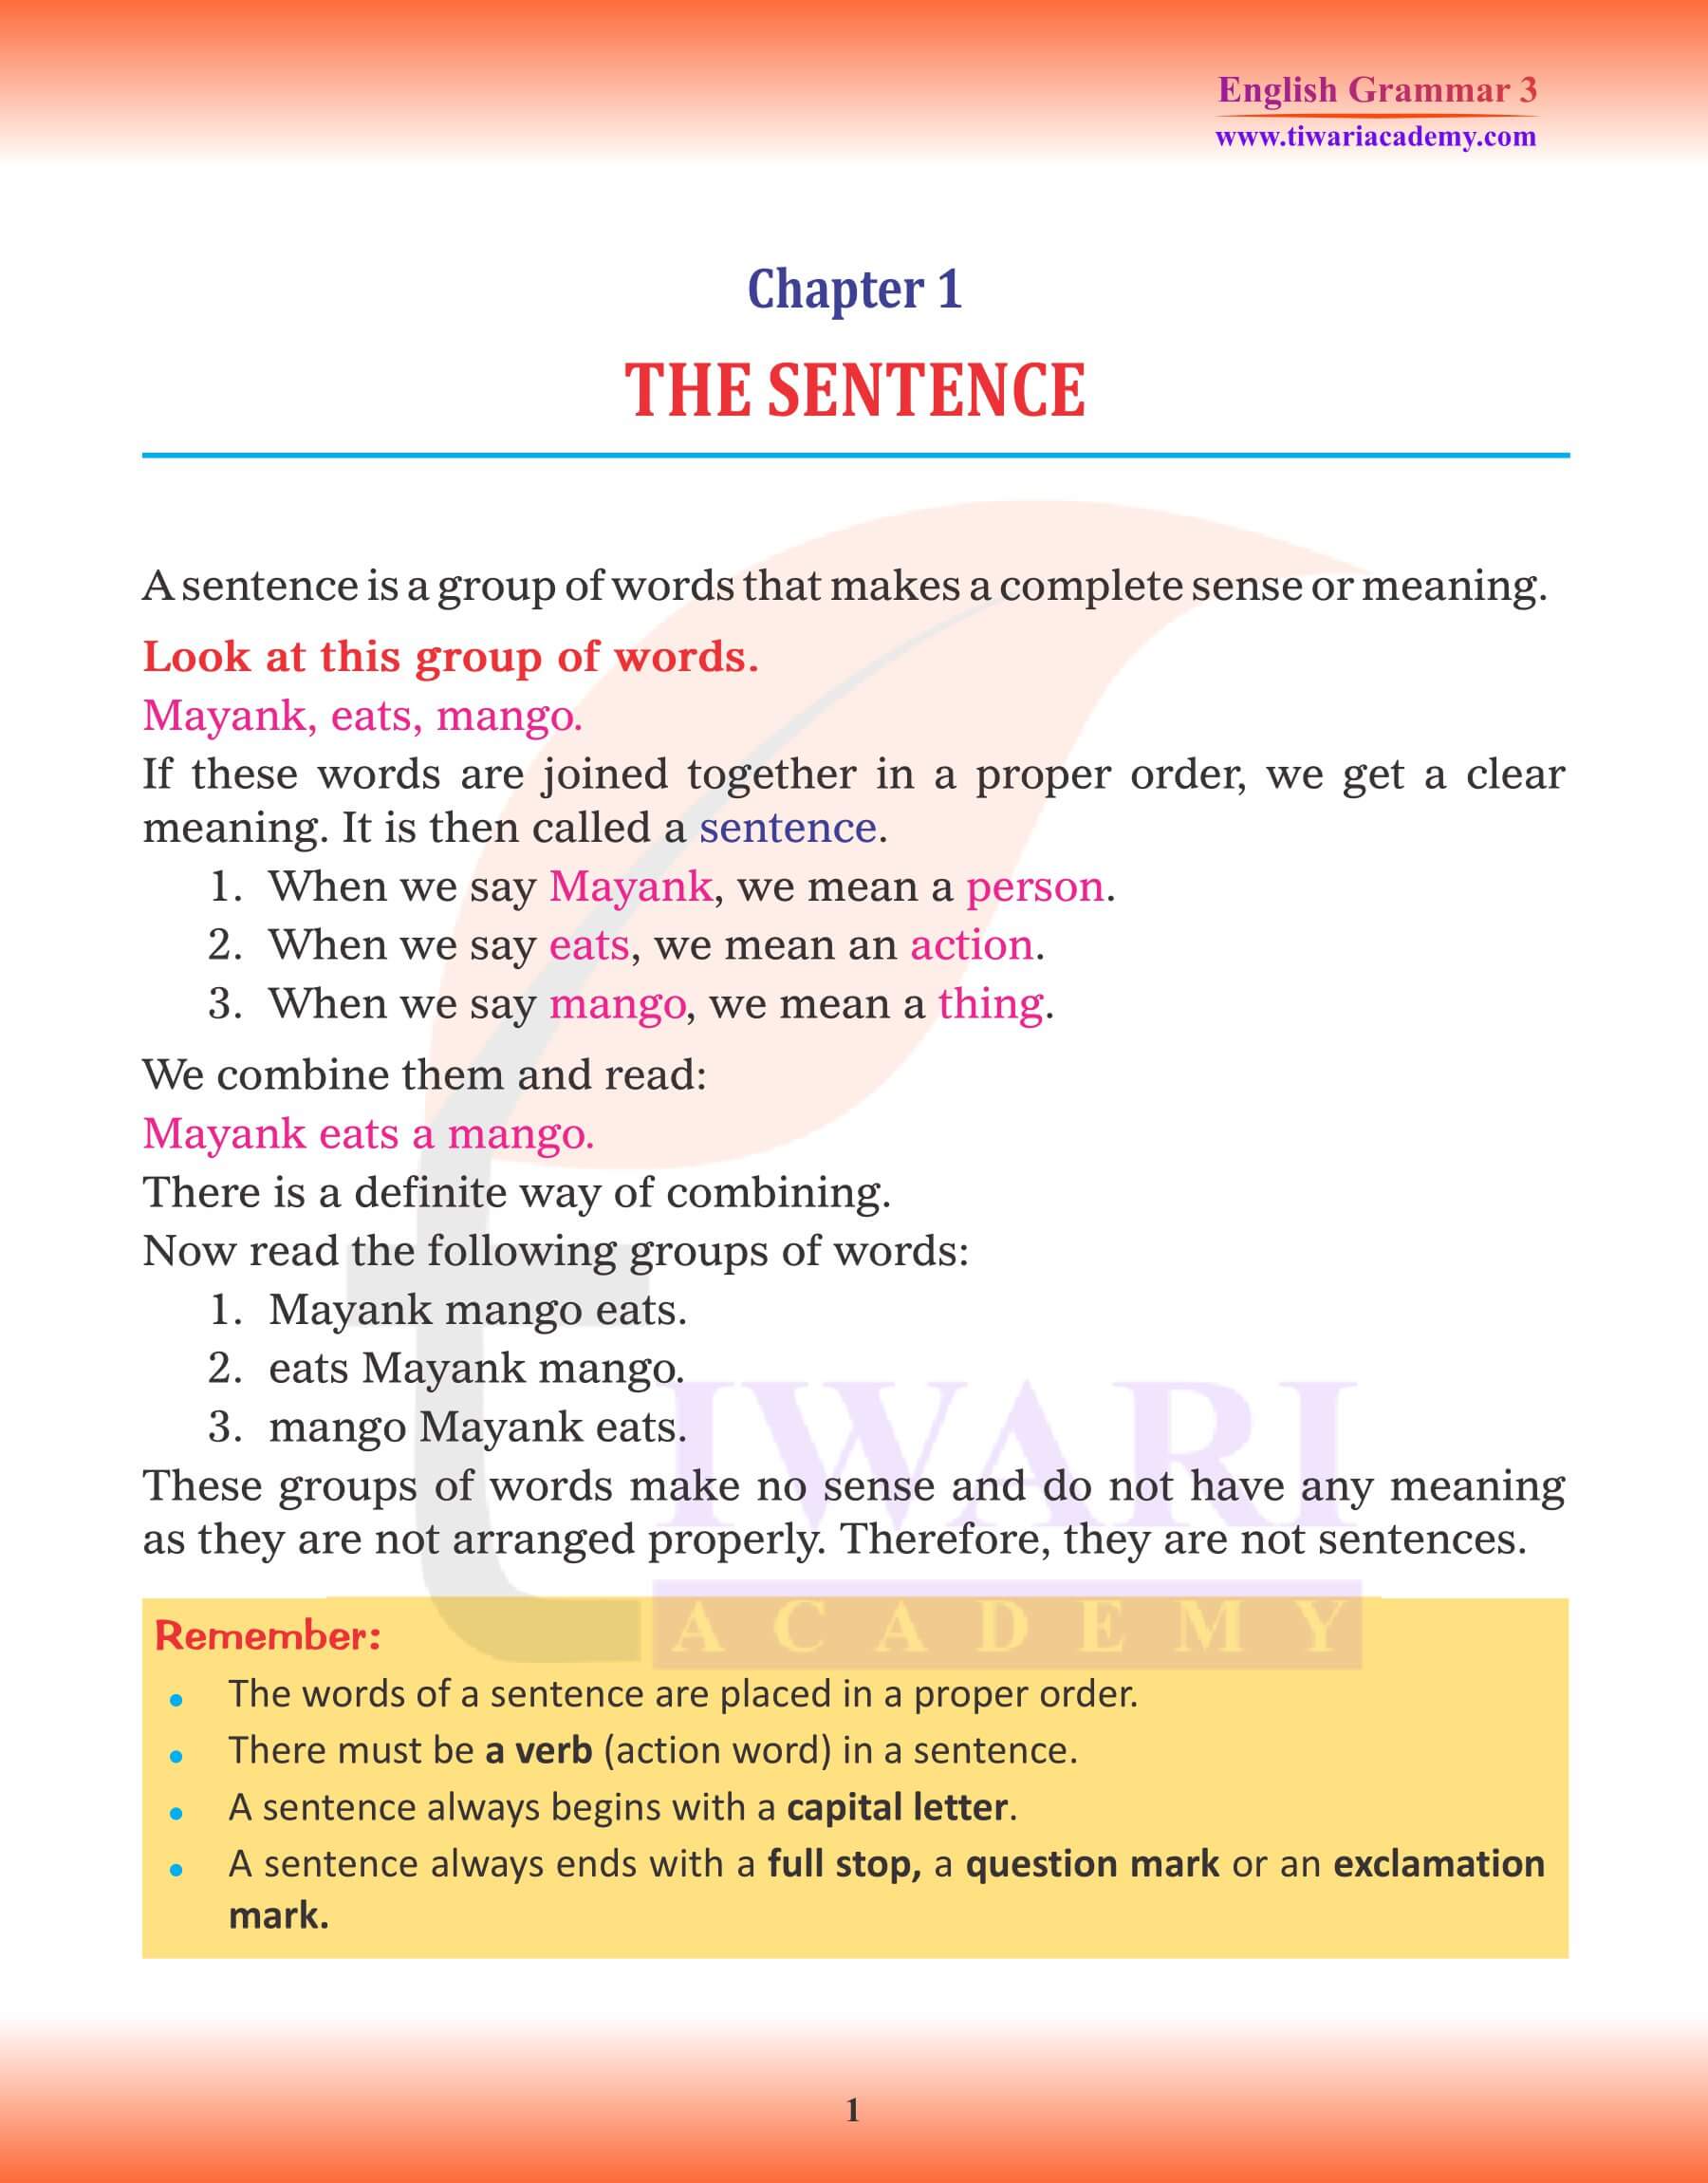 Class 3 English Grammar Chapter 1 The Sentence